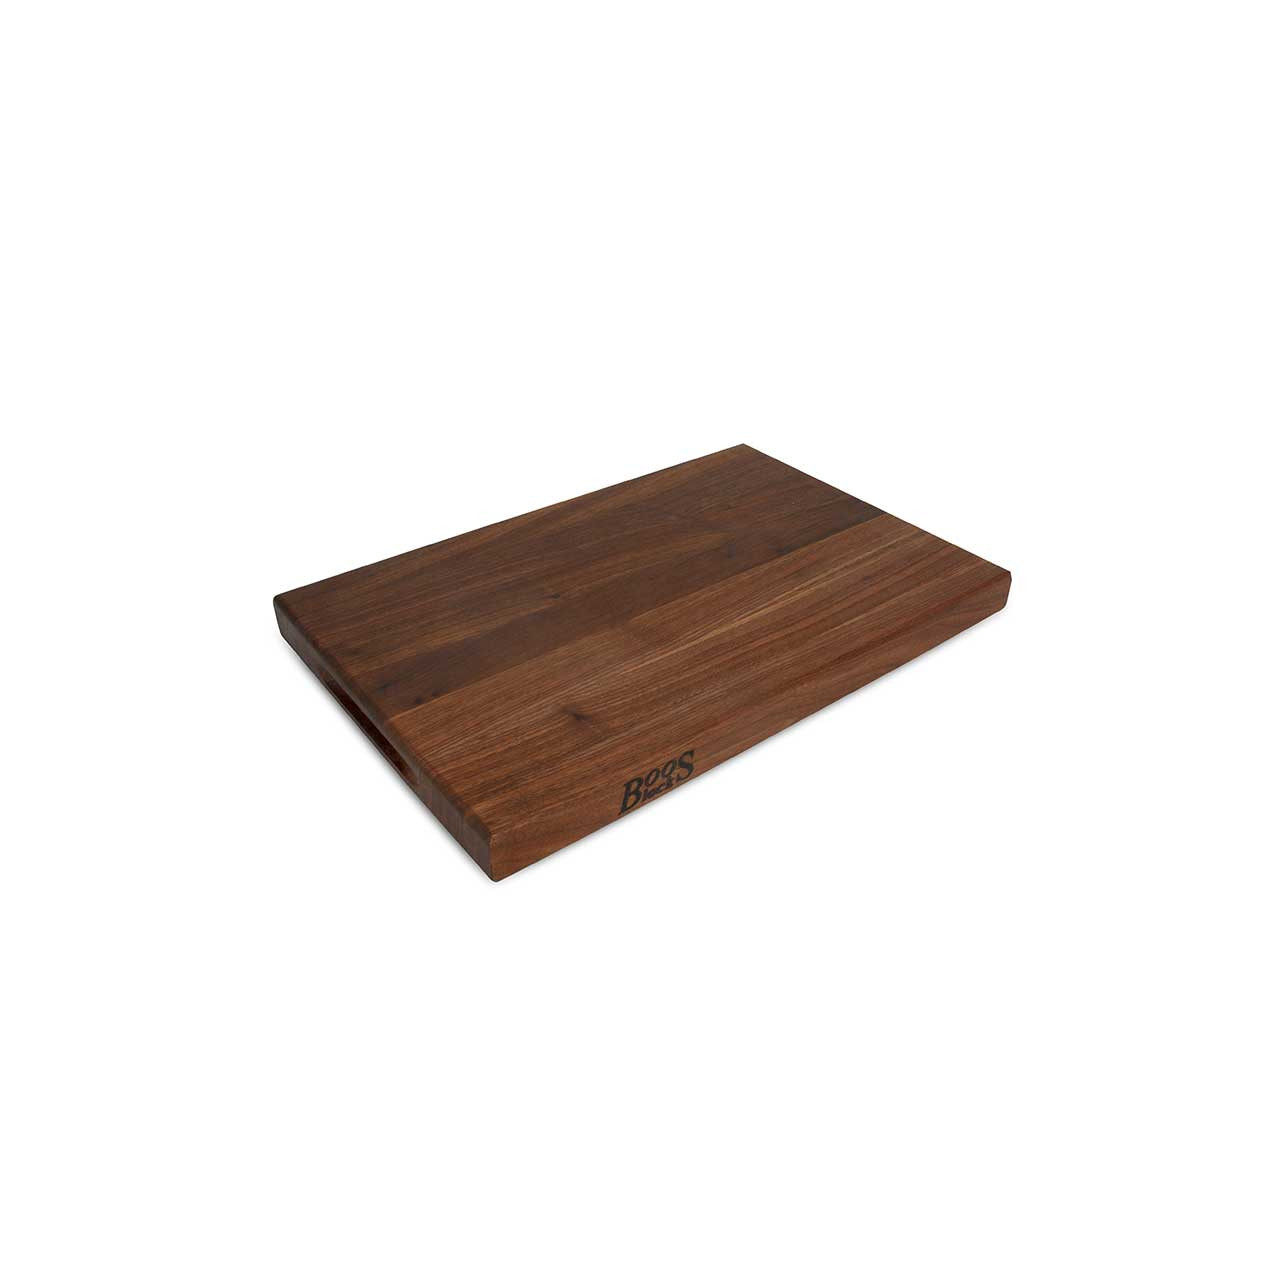 Choice 18 x 12 x 1/2 Brown Polyethylene Cutting Board